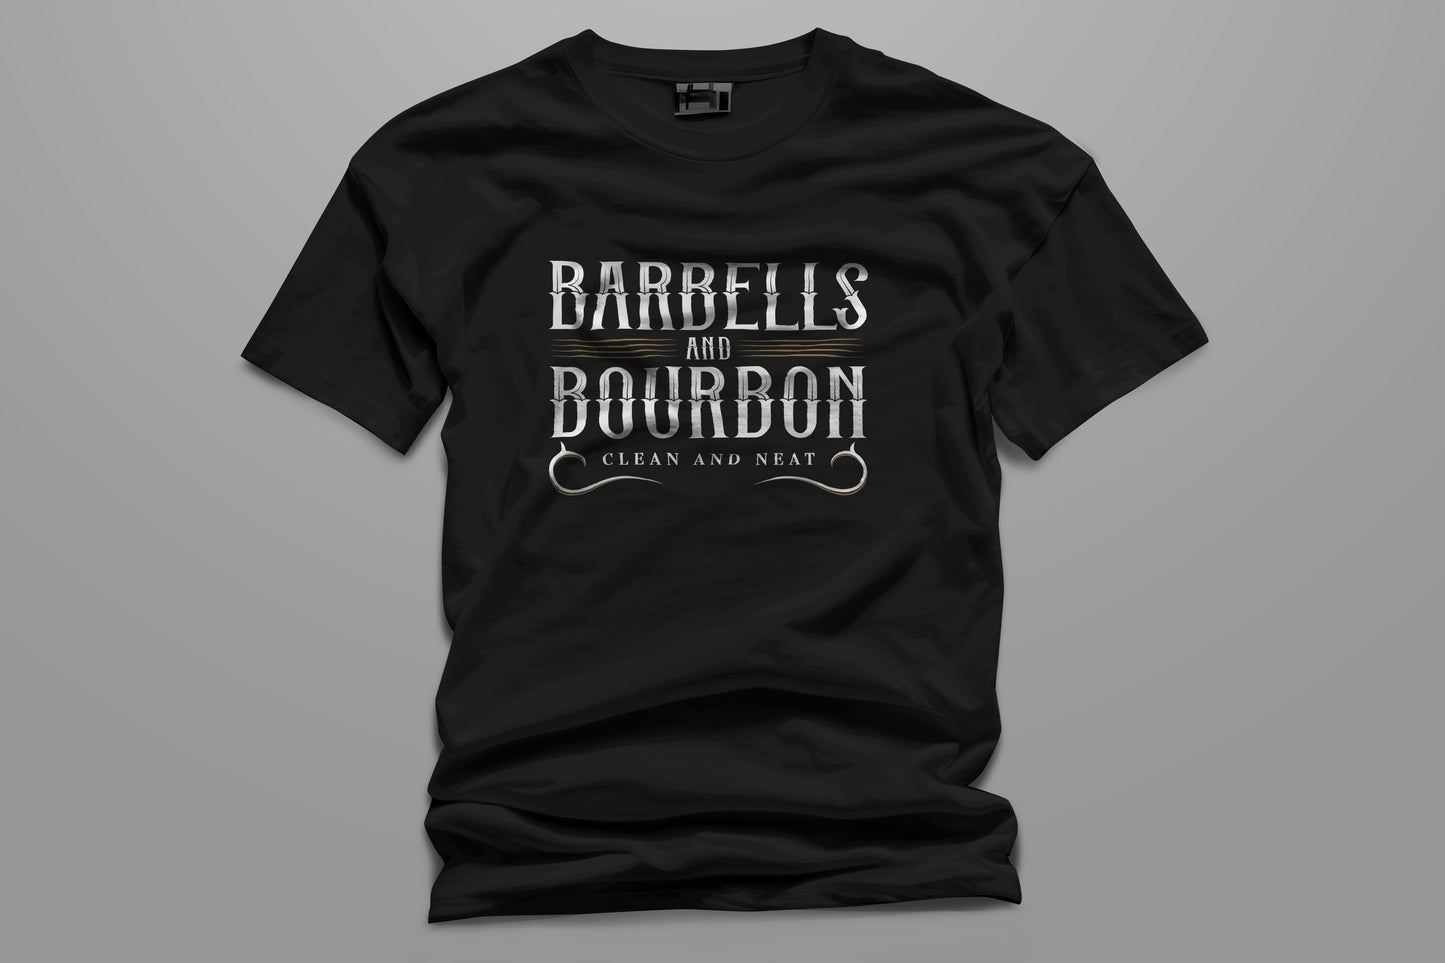 Barbells and Burboun